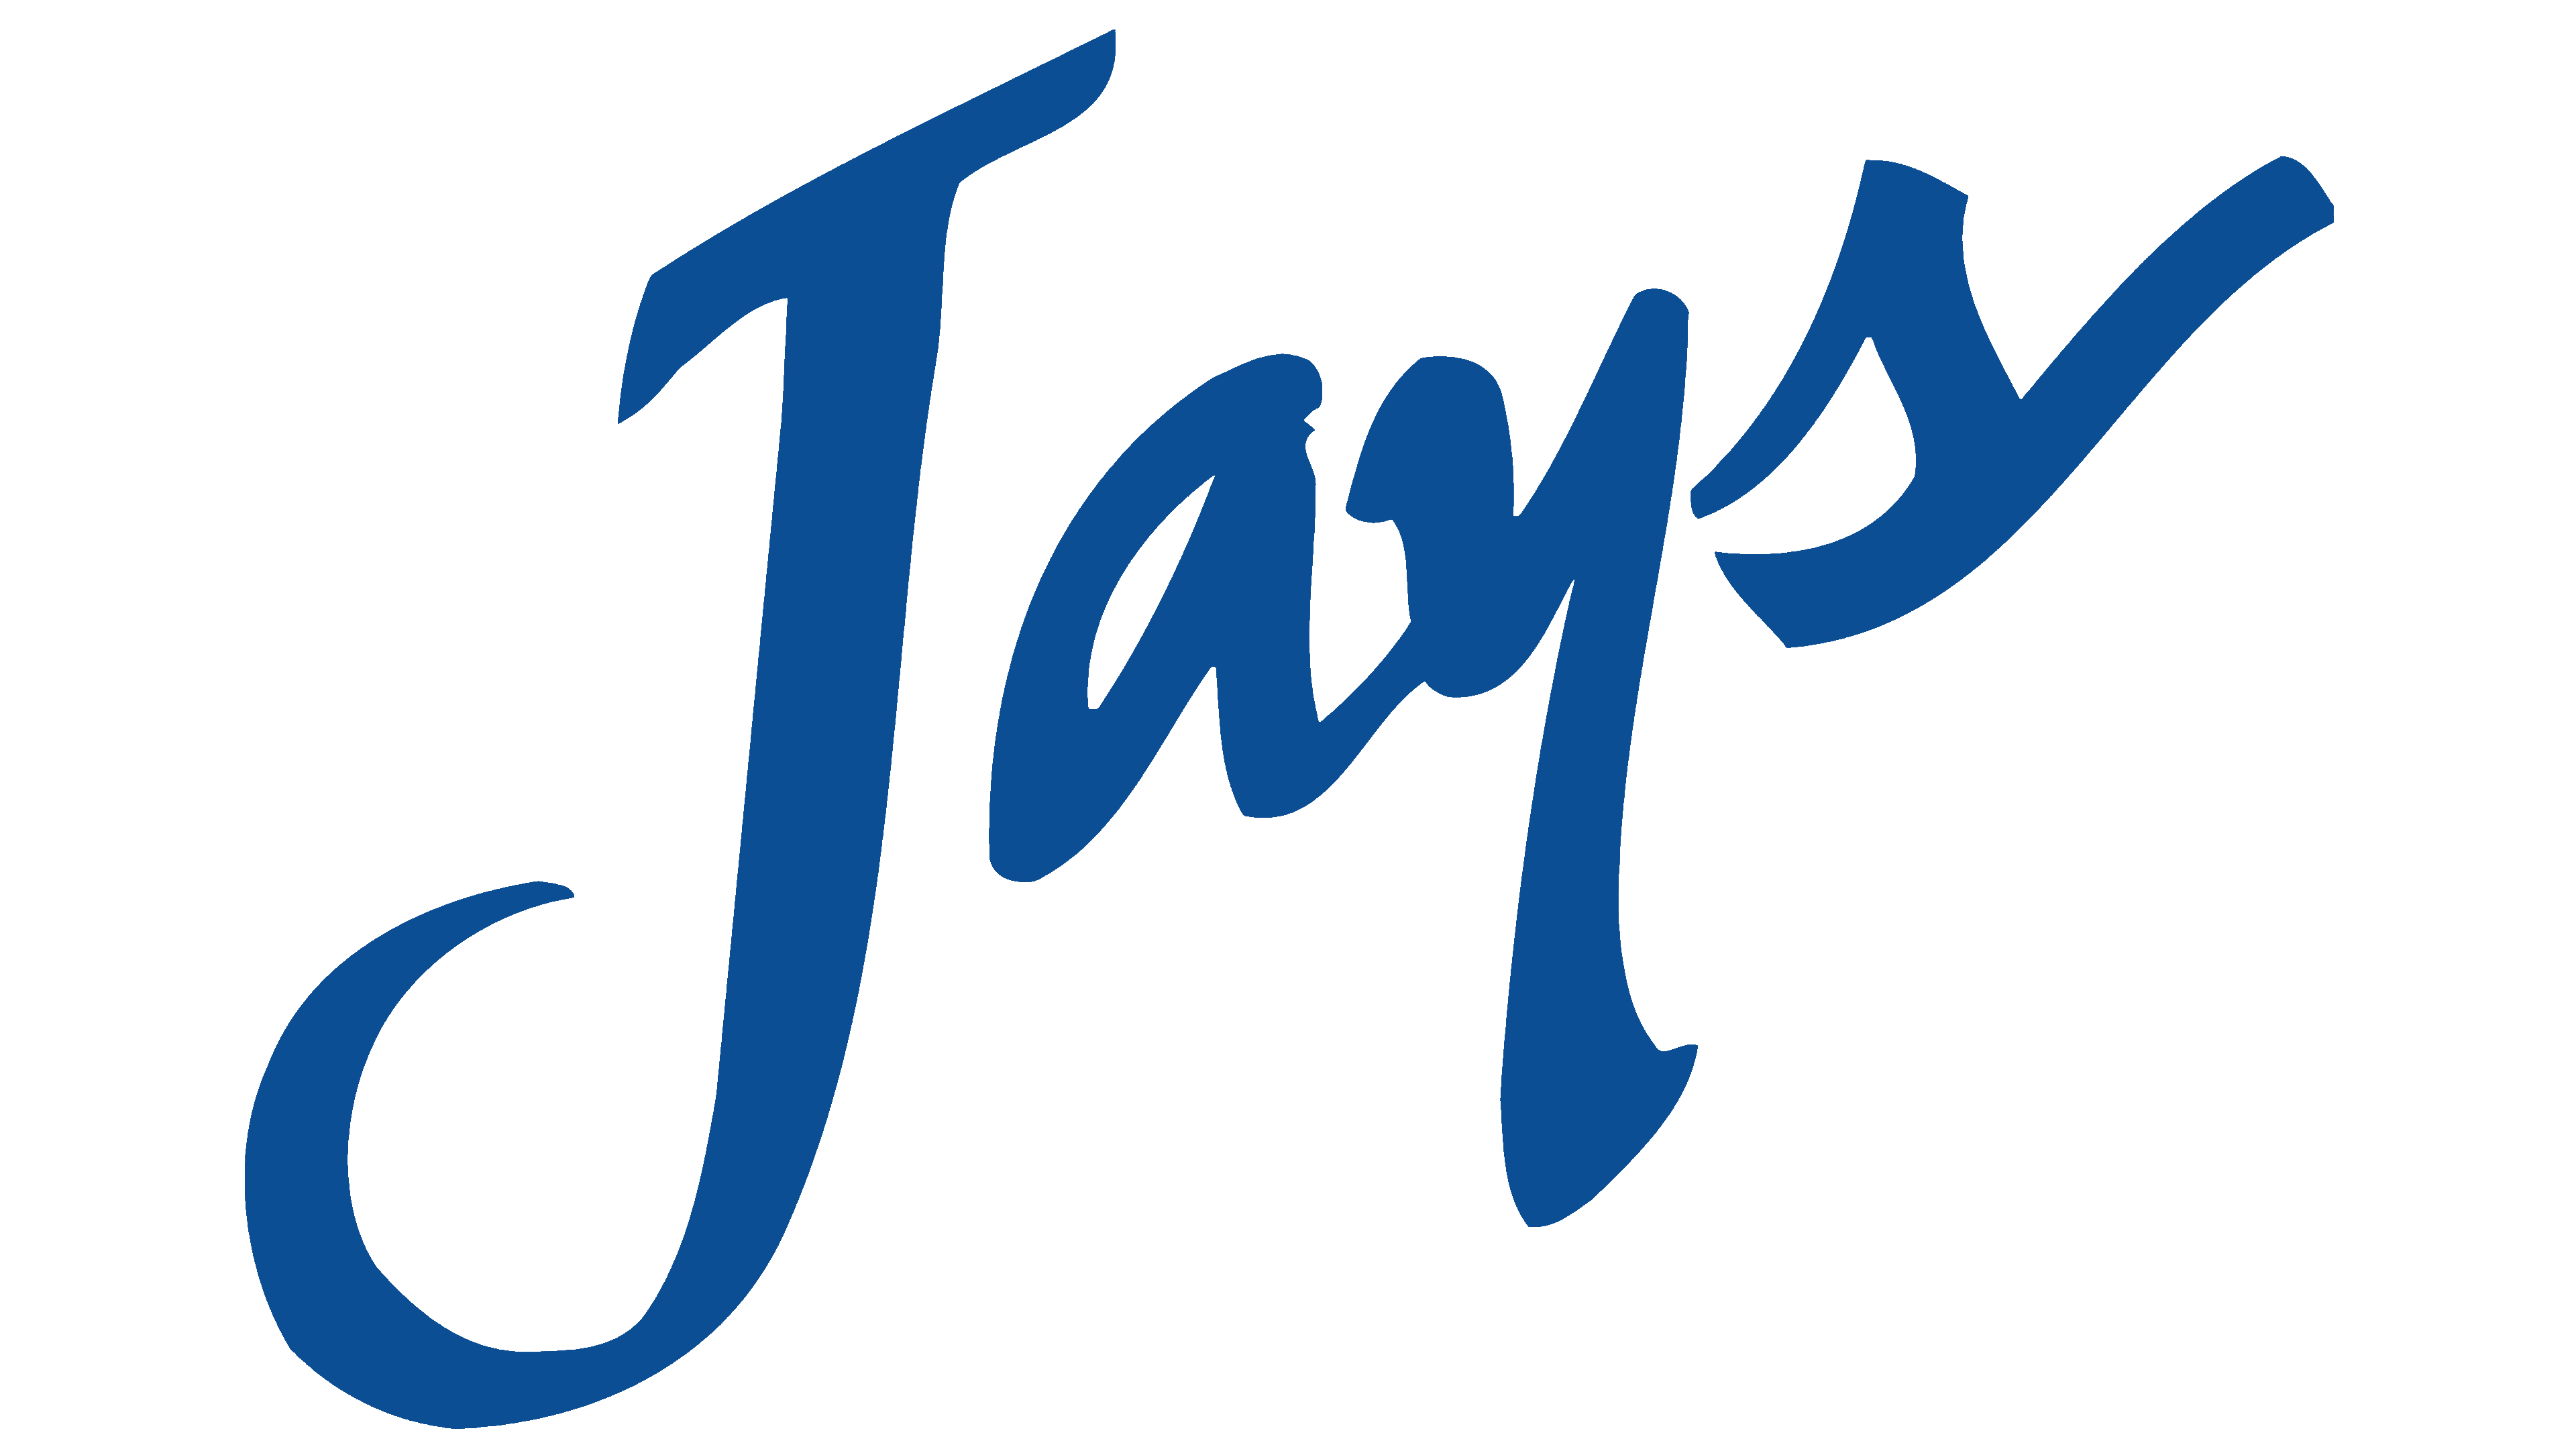 Blue Jays Logo Transparent Images Png Arts